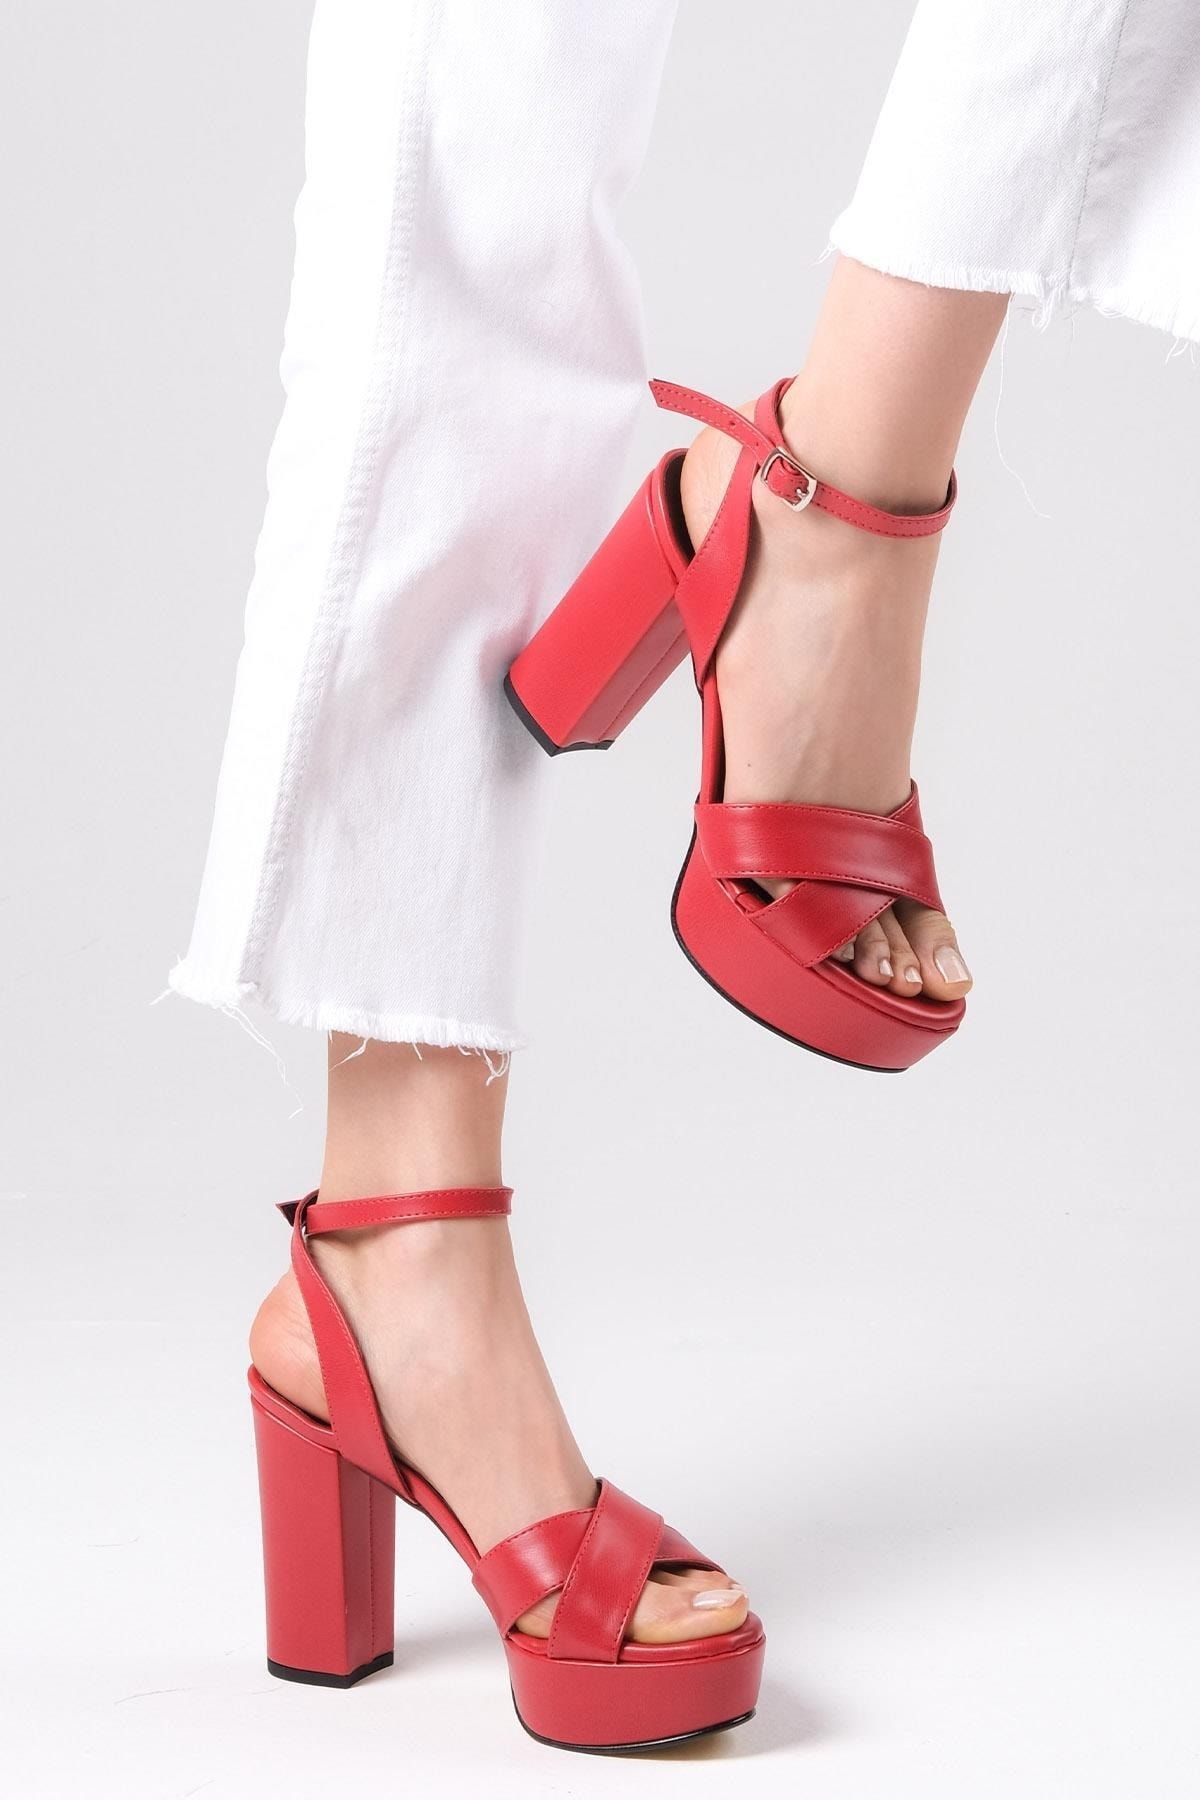 Mio Gusto Ellis Kırmızı Renk Çapraz Bantlı Platformlu Kadın Topuklu Sandalet